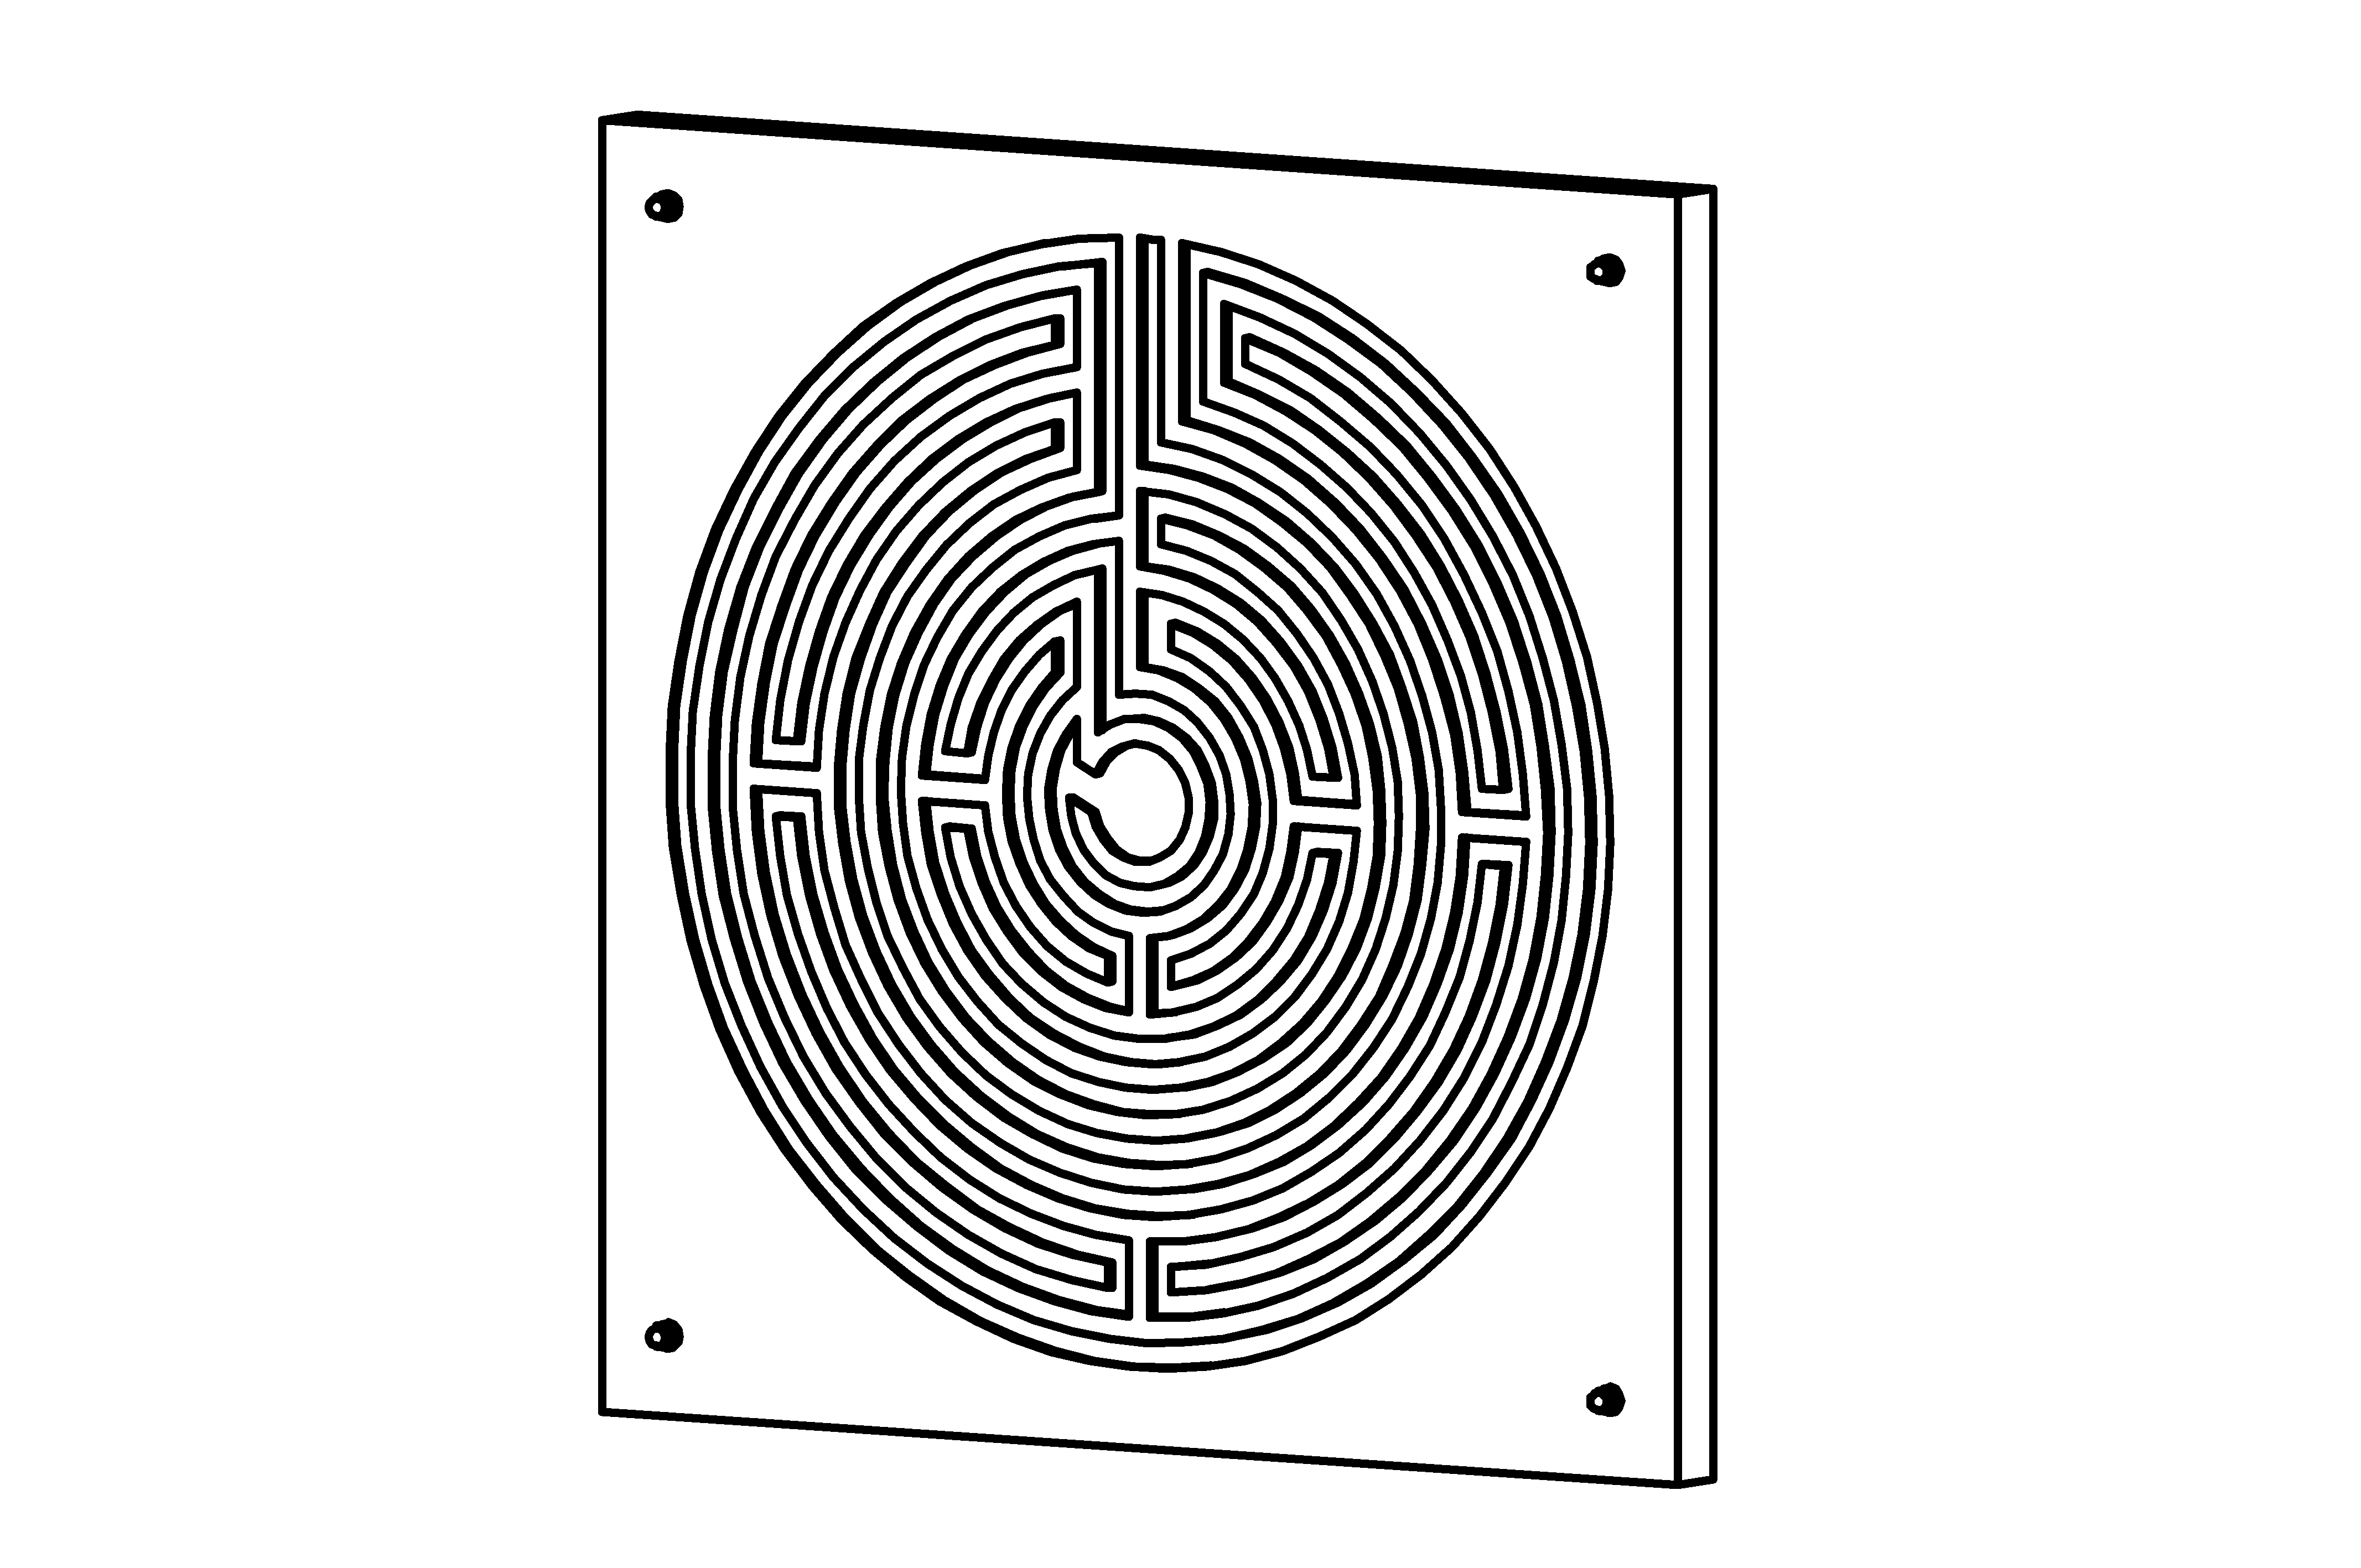 Finger labyrinth stimulation game